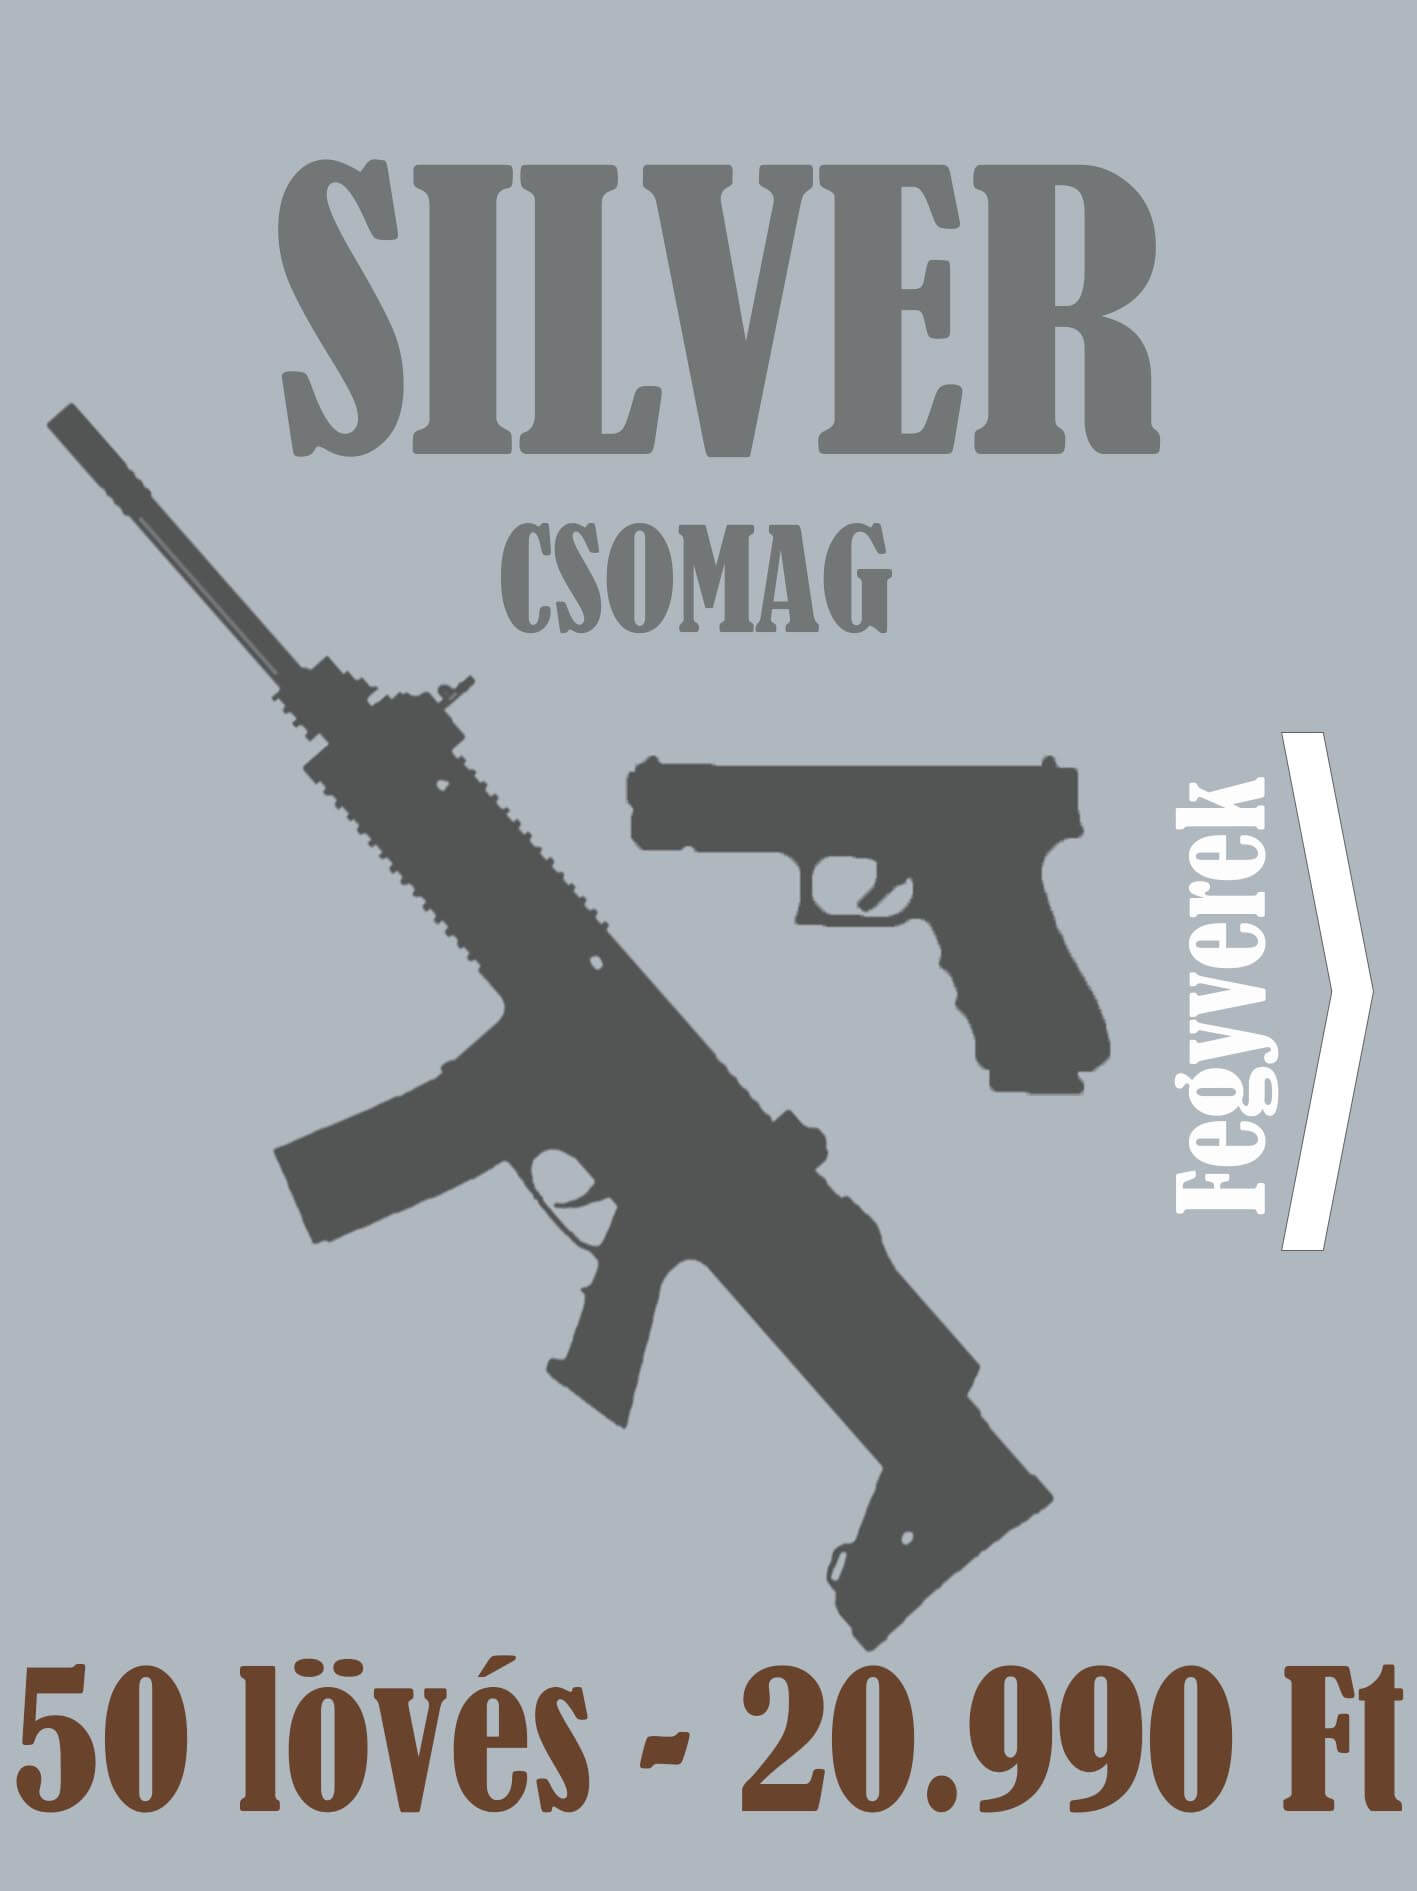 Élménylövészeti csomag - Silver